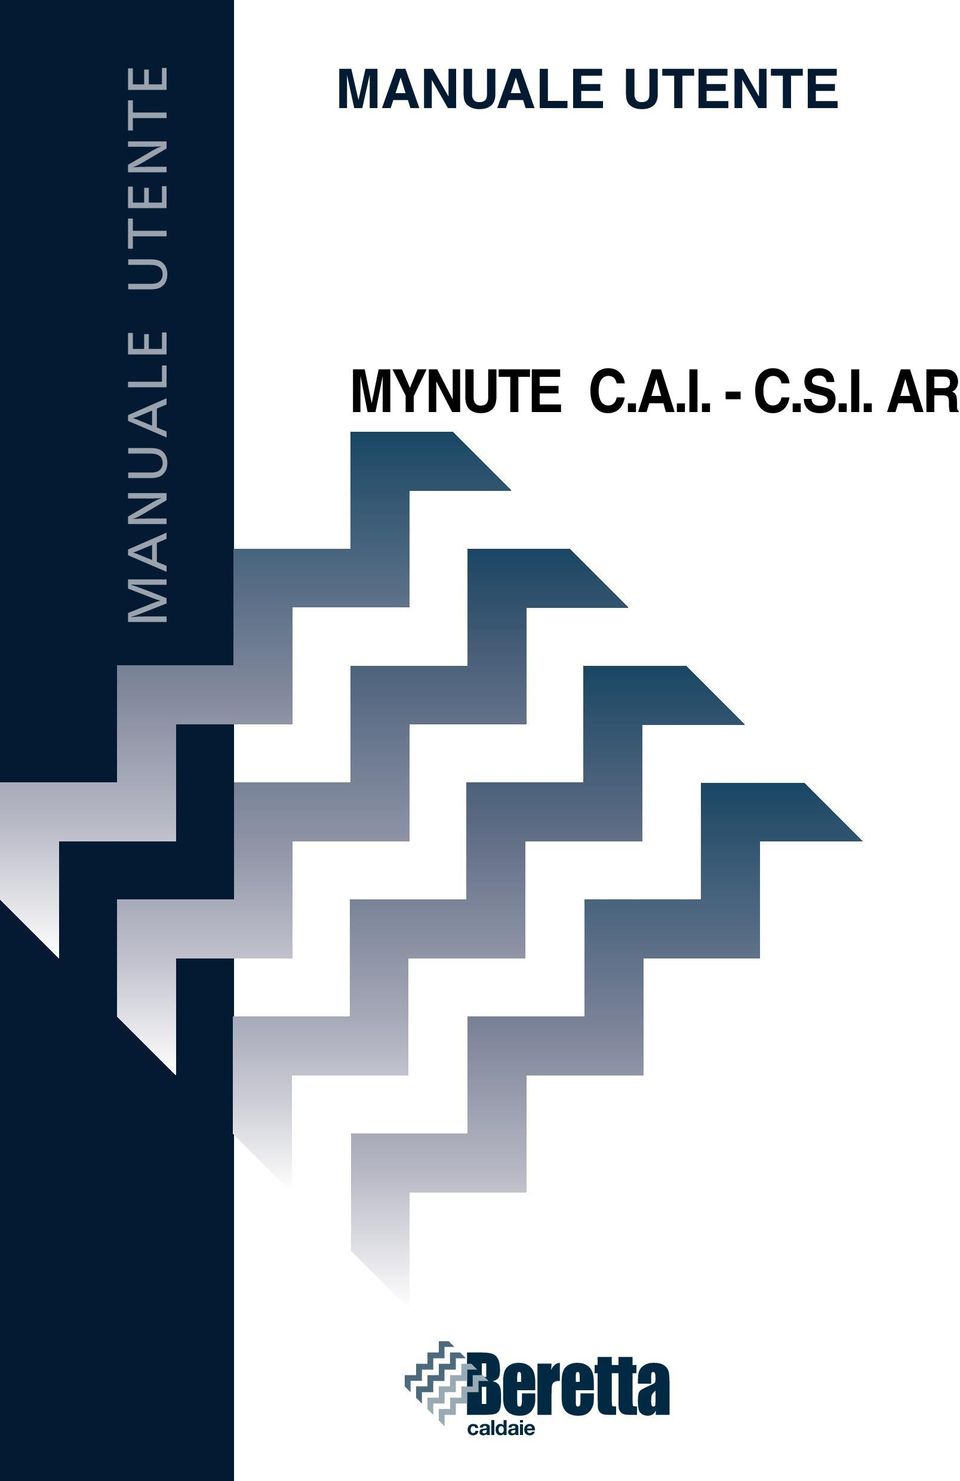 MYNUTE C.A.I.